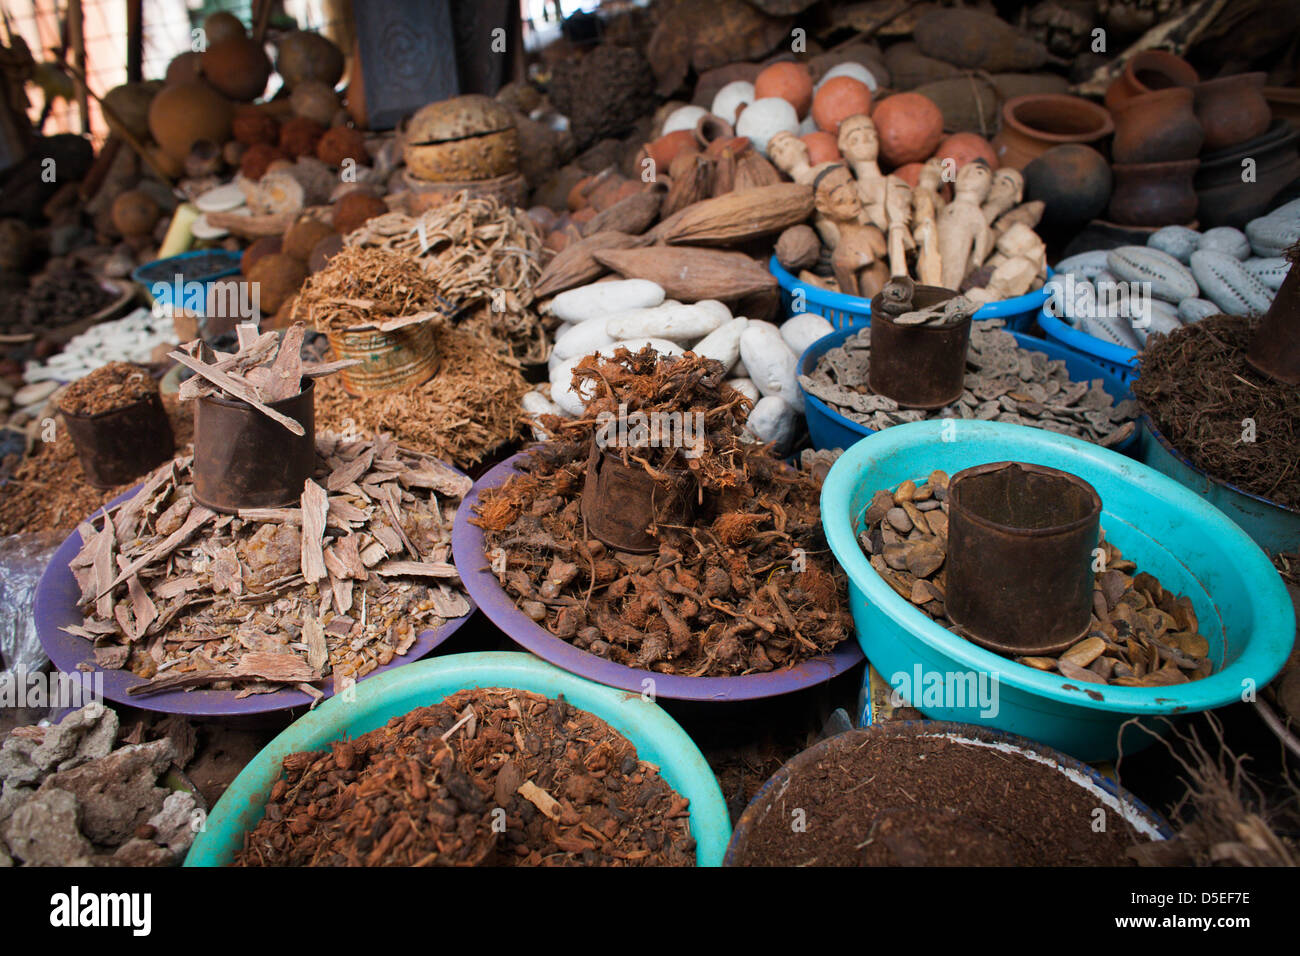 Diversi medicinali tradizionali, tra cui corteccia di albero, nel mercato del legname, Accra, Ghana. Foto Stock